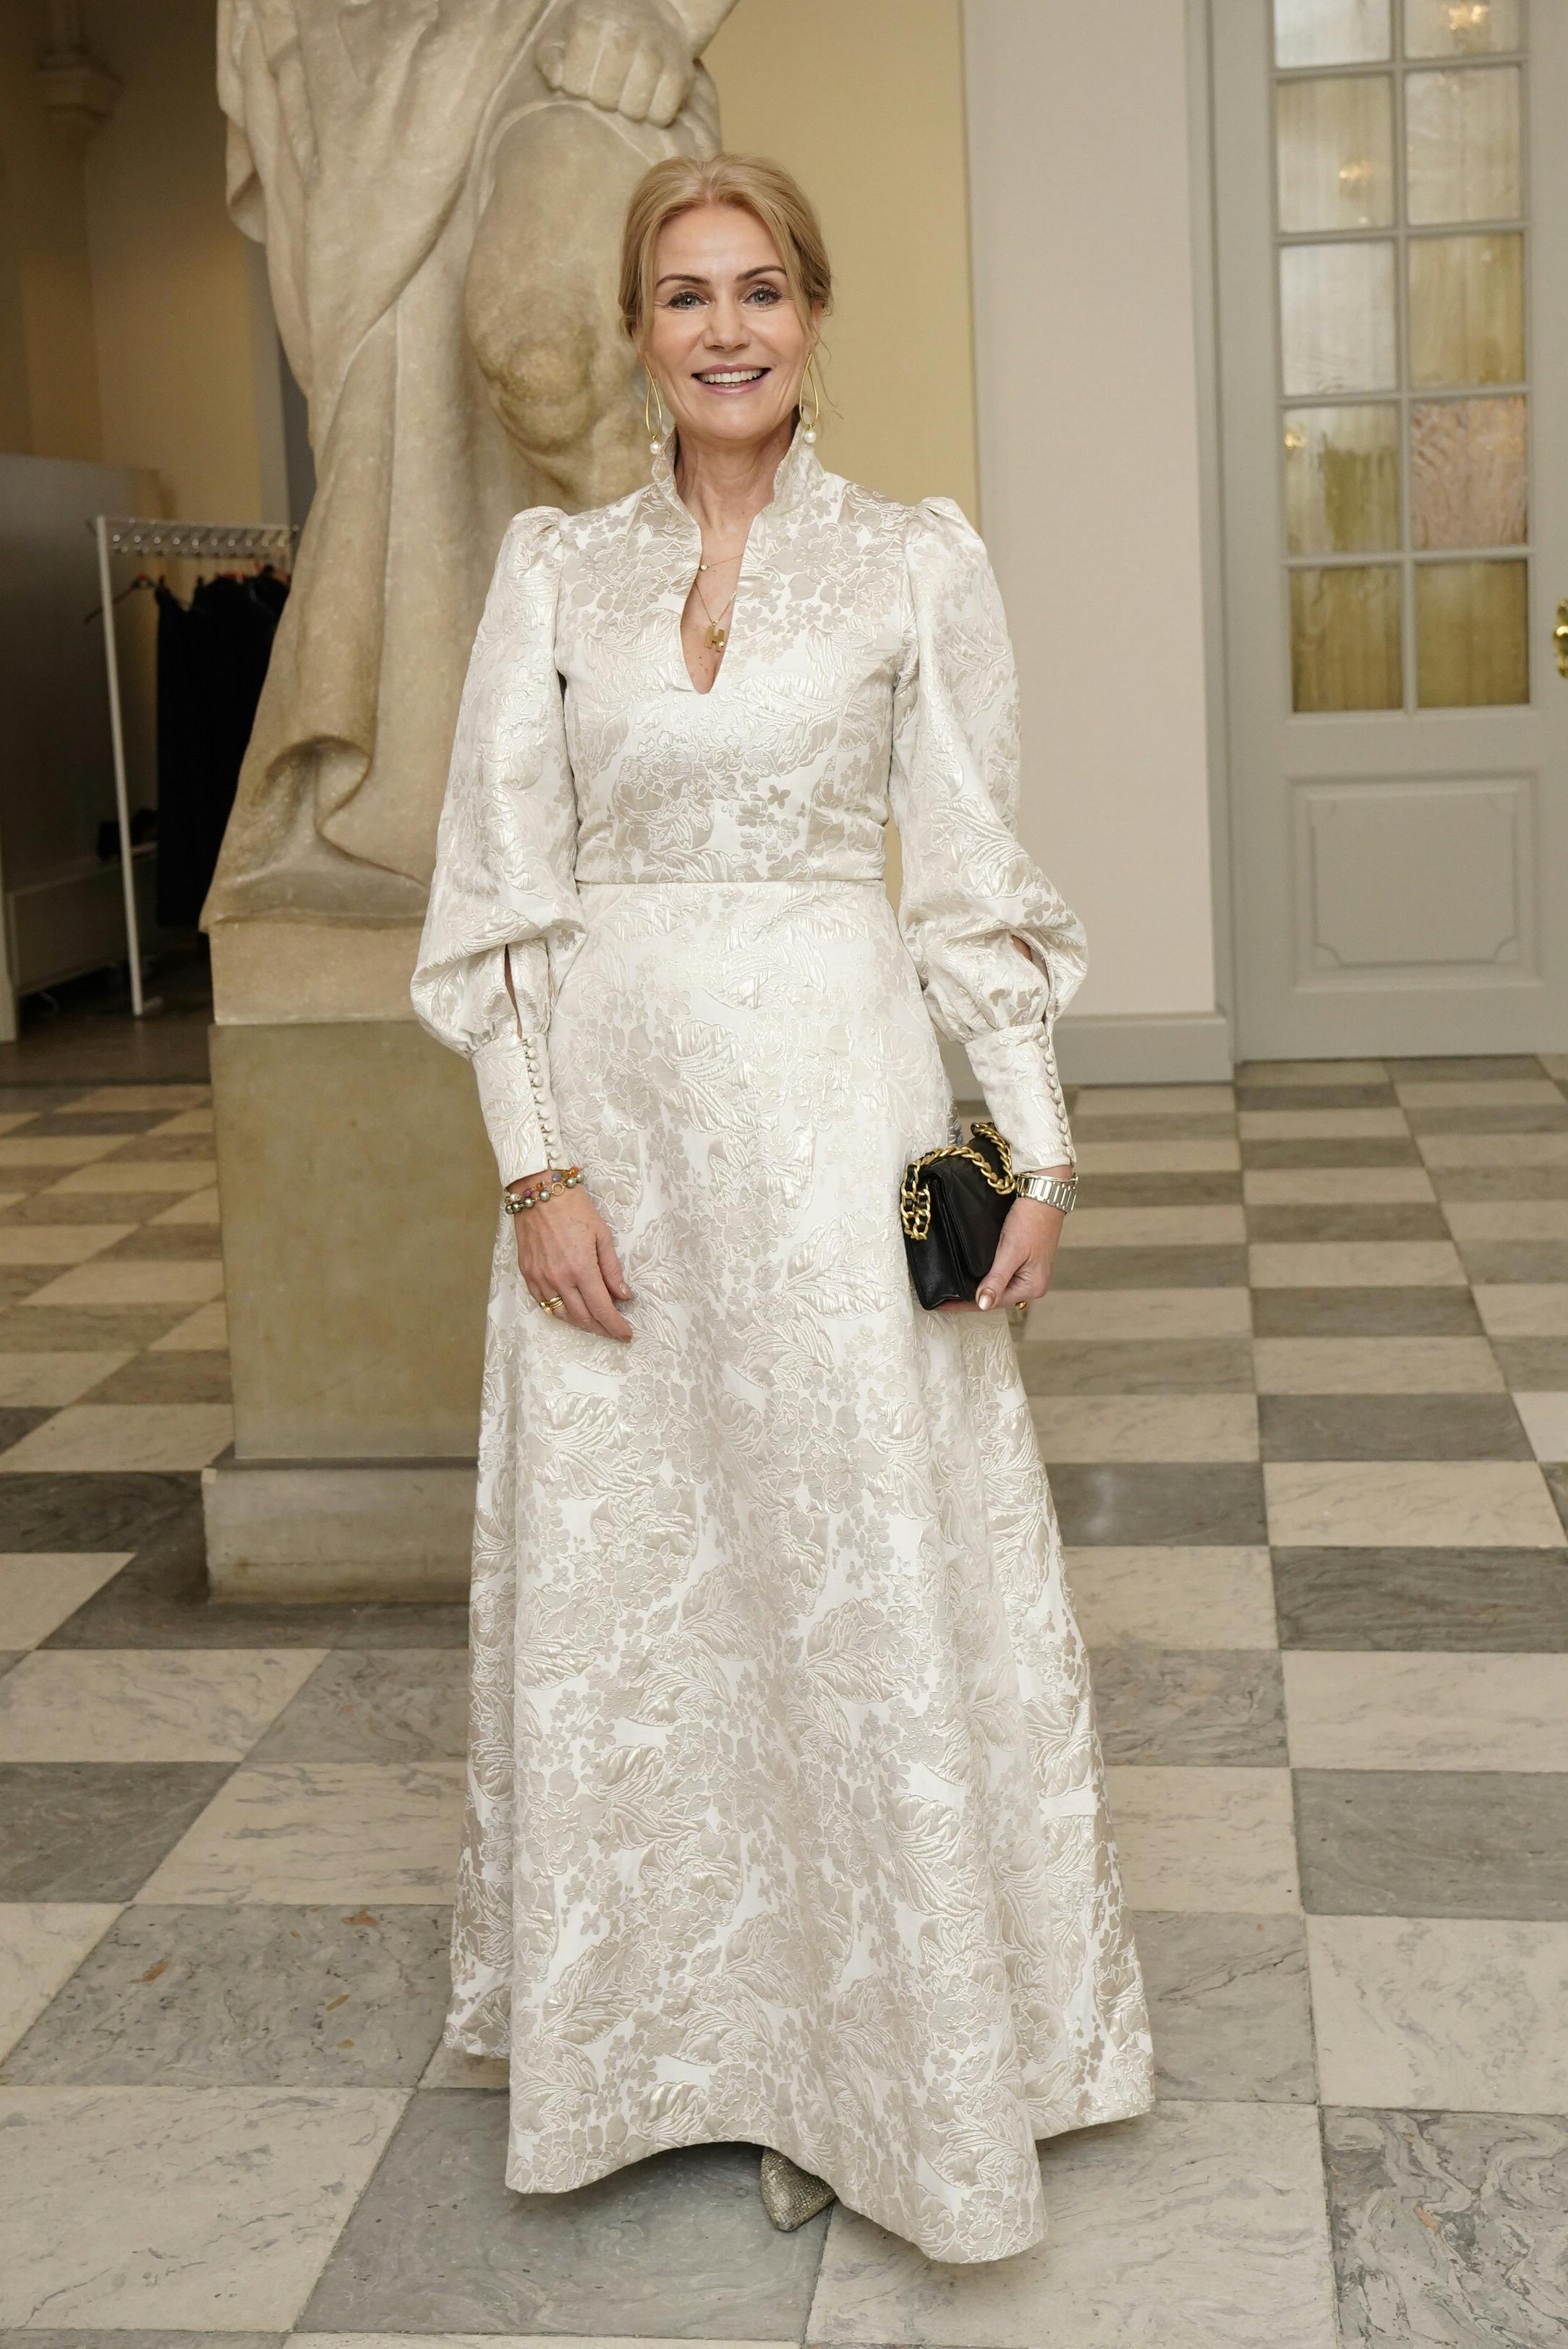 Helle Thorning-Schmidt deltager i dronningens nytårskur torsdag.